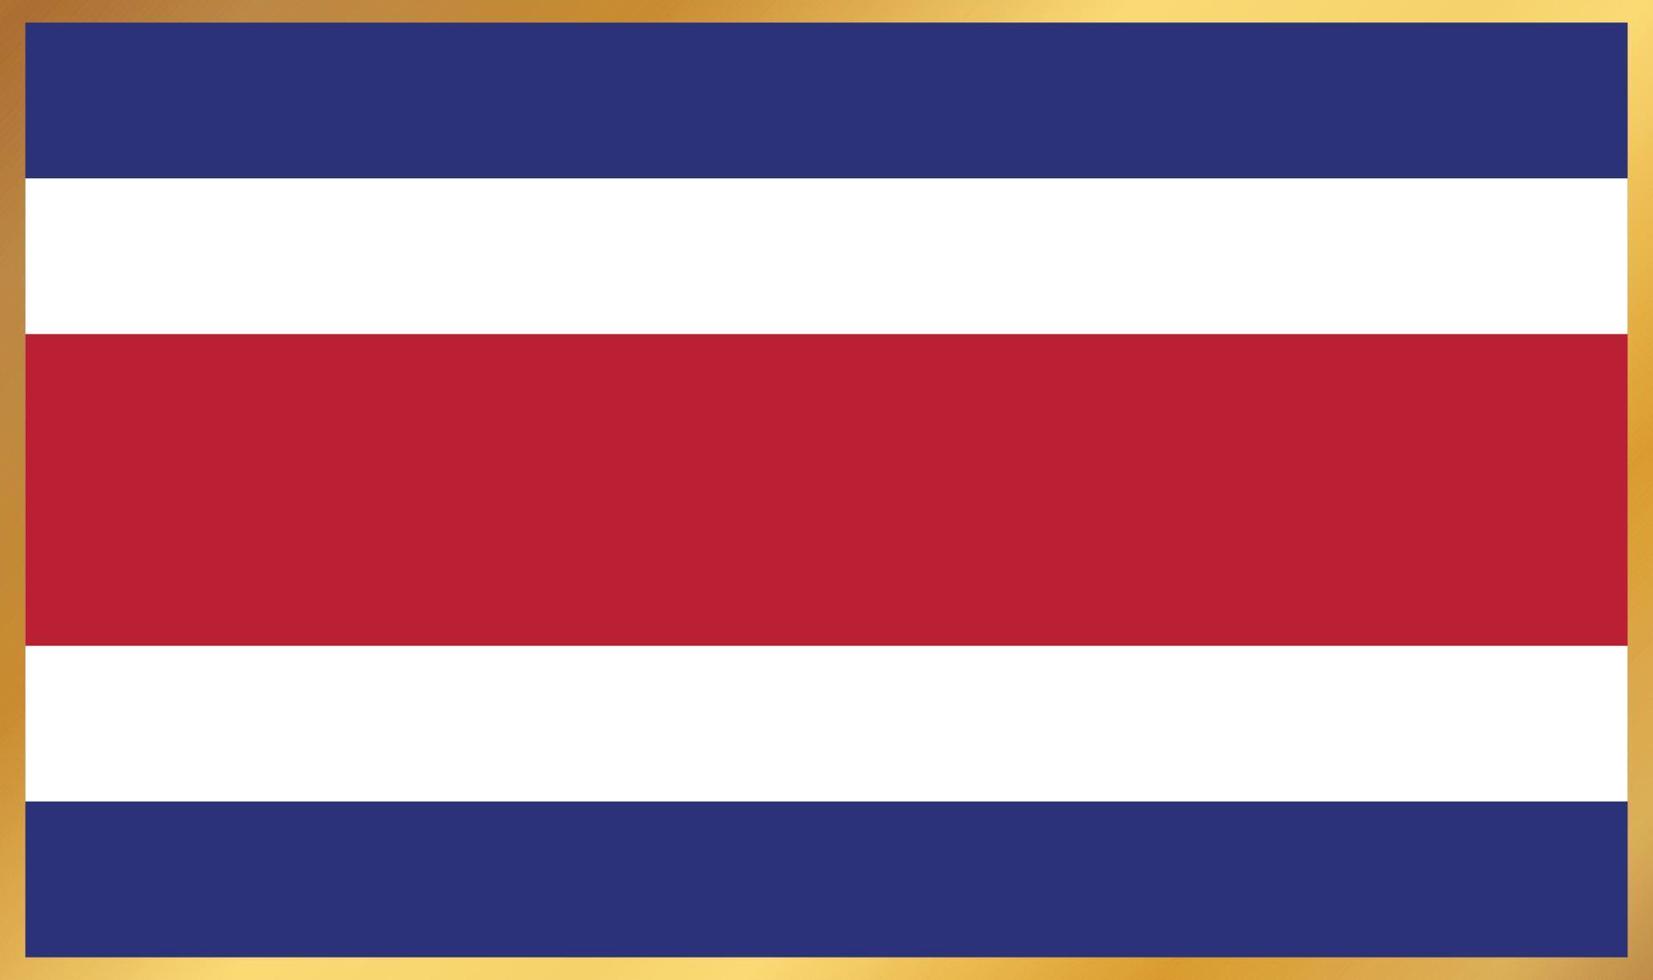 bandera de costa rica, ilustración vectorial vector